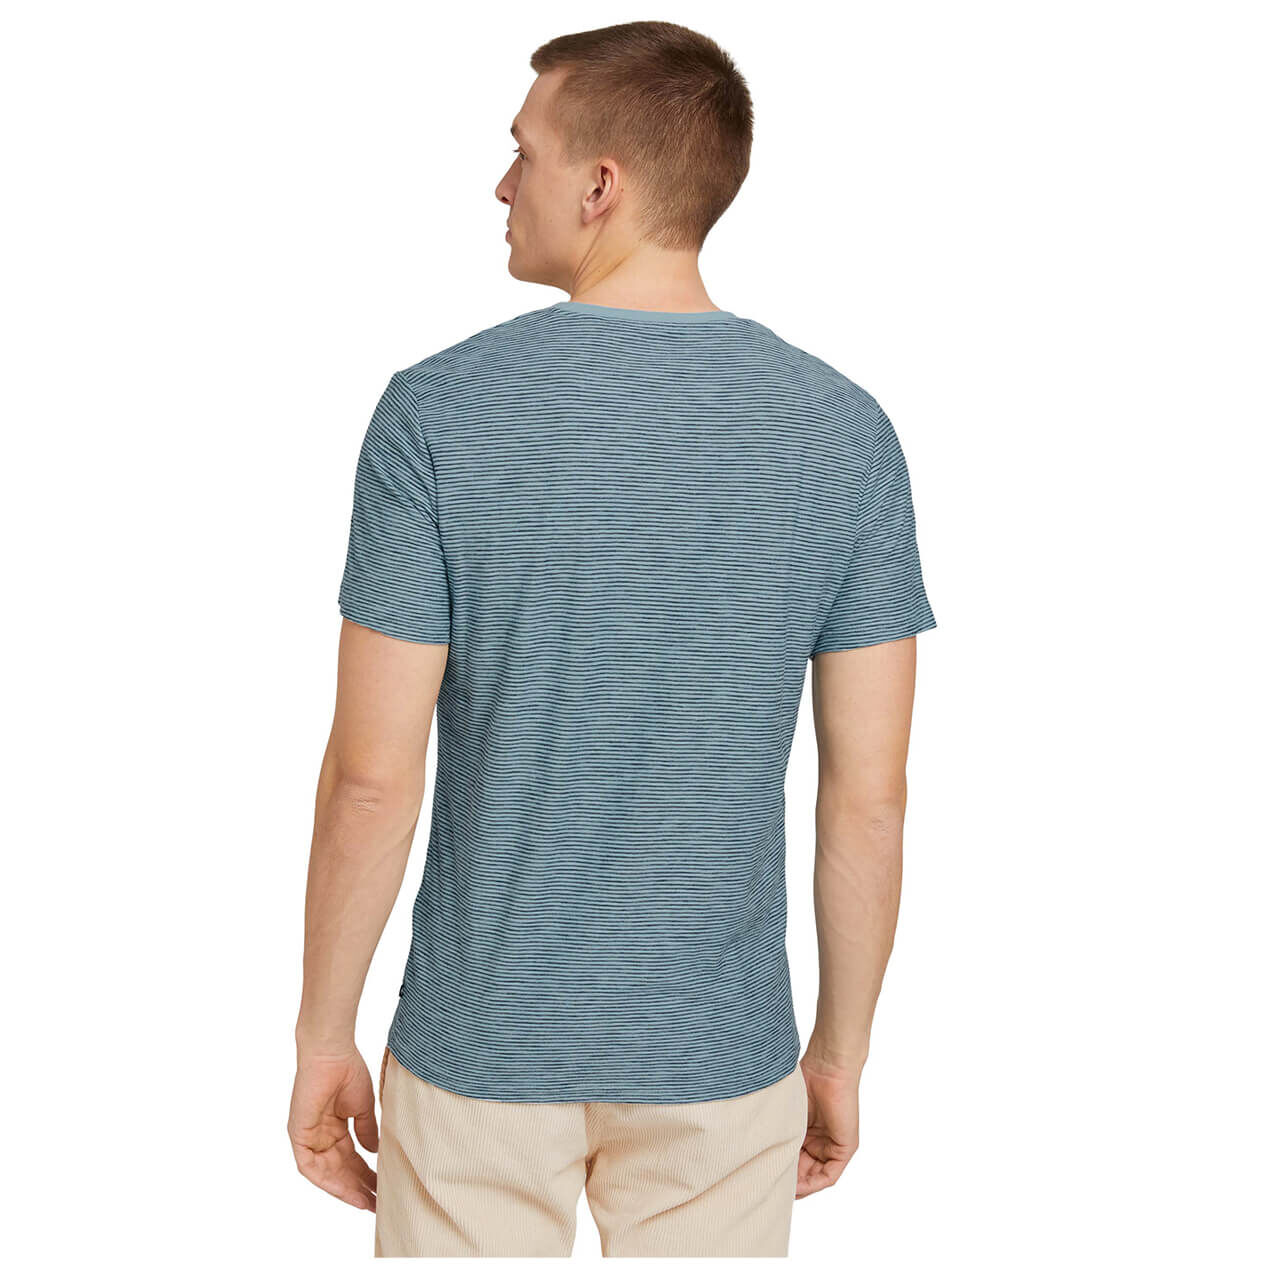 Tom Tailor T-Shirt für Herren in Blau mit Print, FarbNr.: 29167